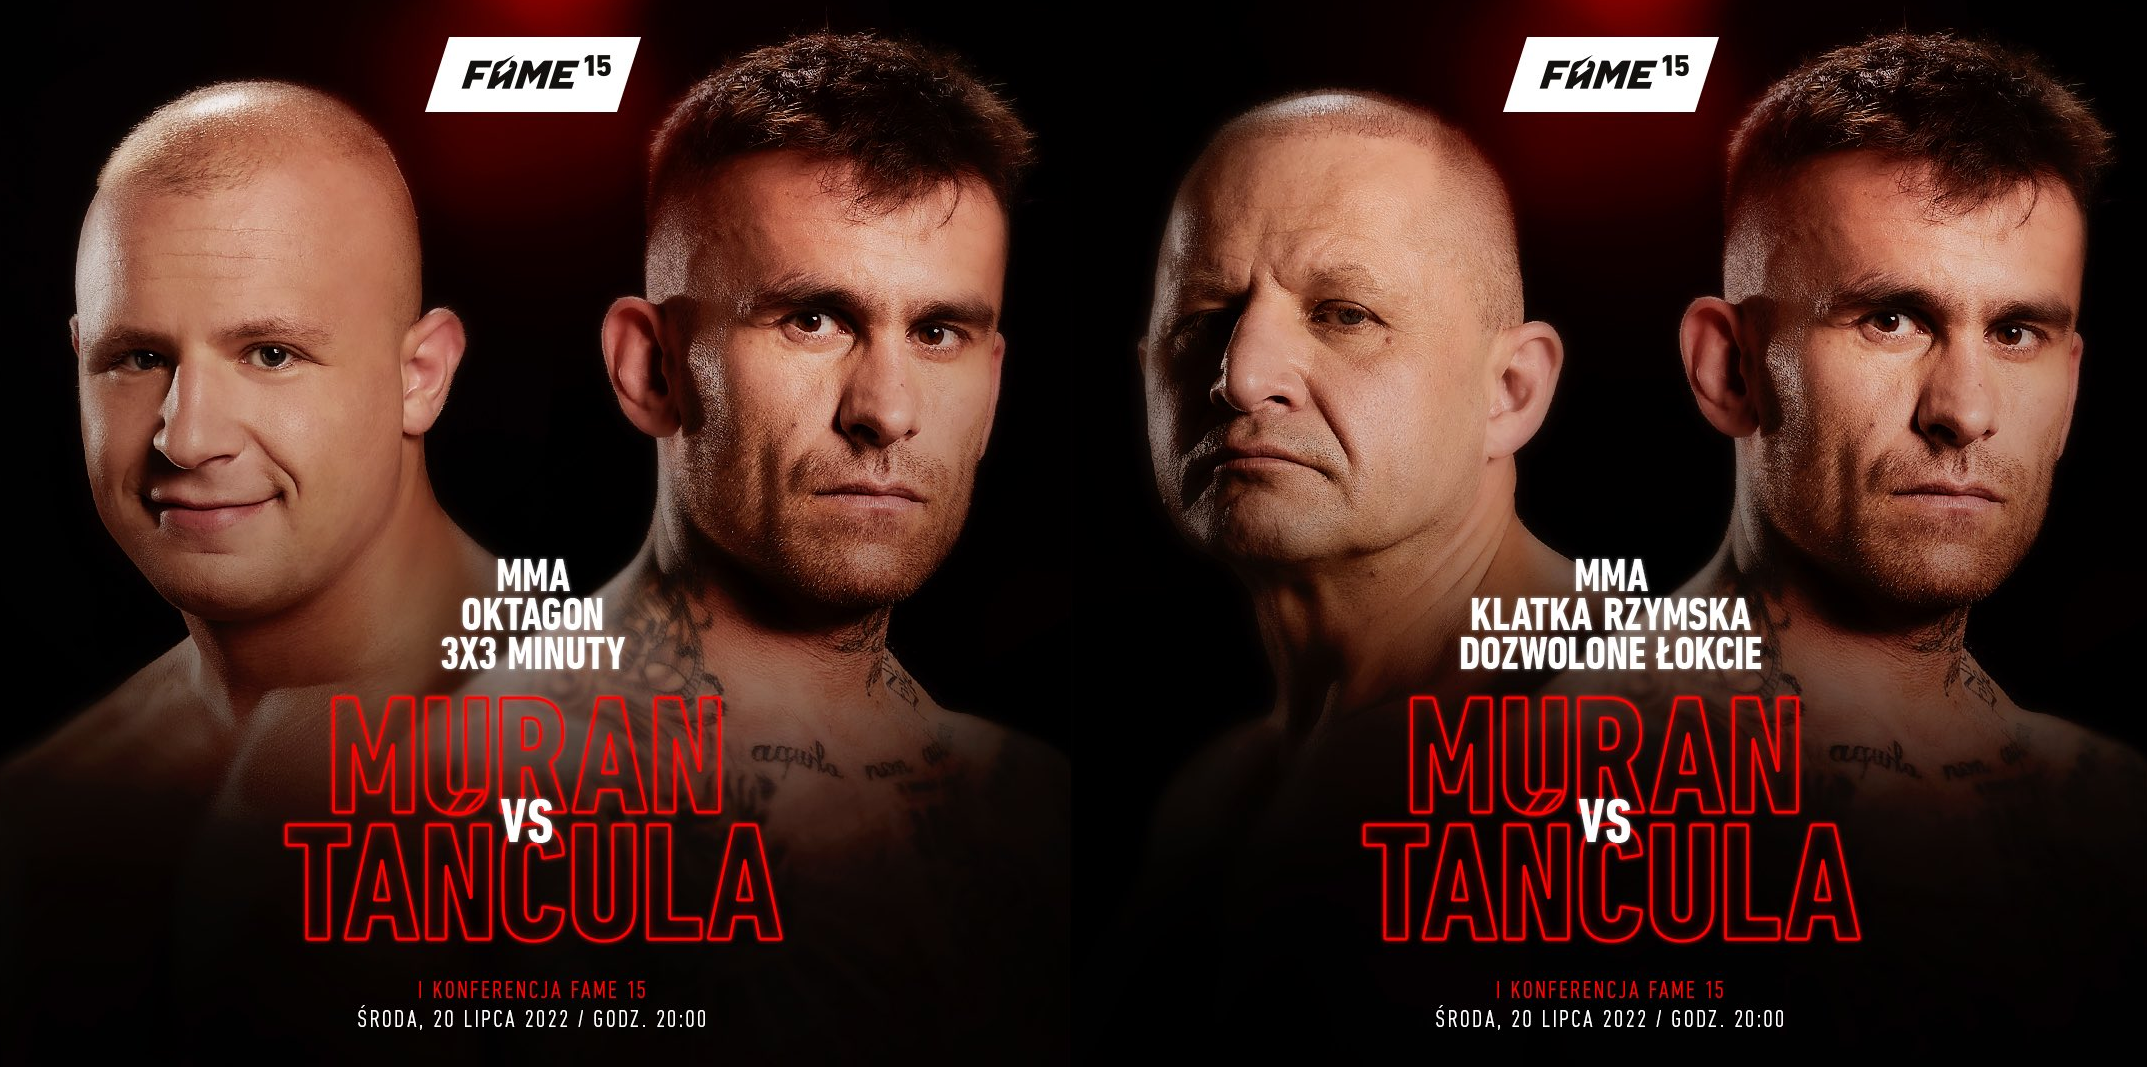 Arkadiusz Tańcula powraca na Fame MMA 15 i zawalczy... z dwoma Muranami!